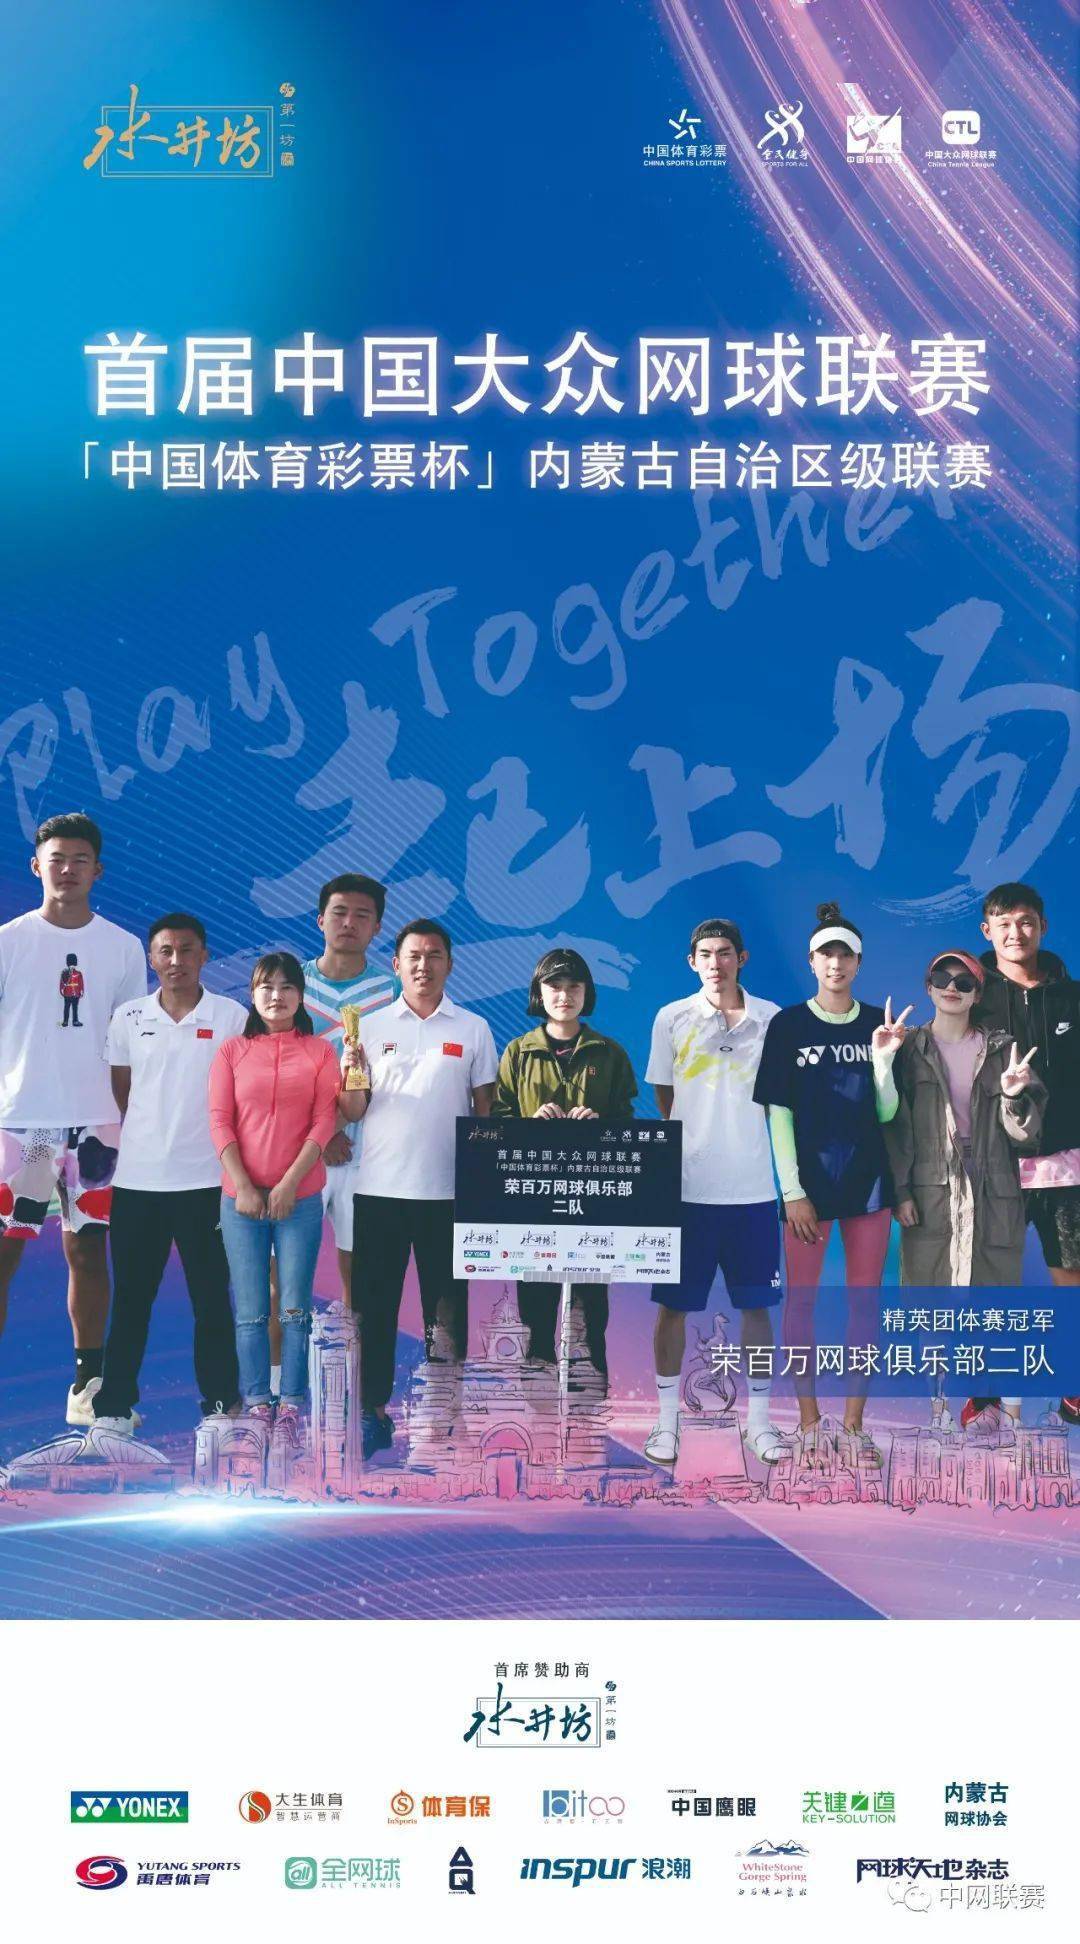 首届中国大众网球联赛“体育彩票杯”内蒙古自治区级联赛完美收官